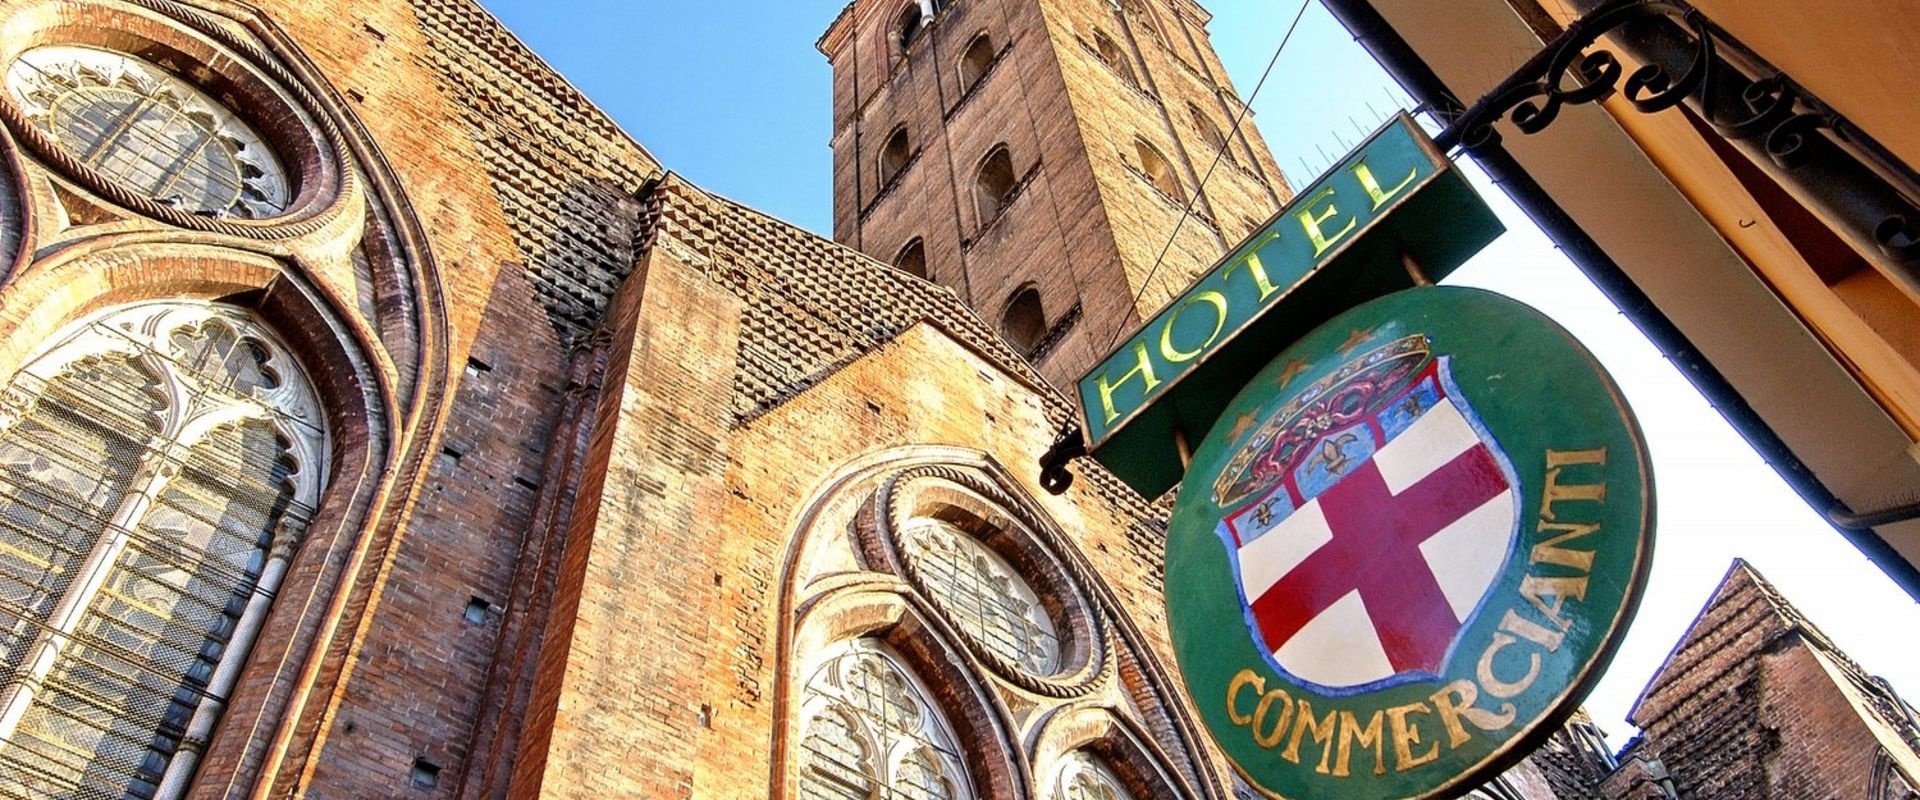 Der charme eines historischen gebäudes  Art Hotel Commercianti Bologna